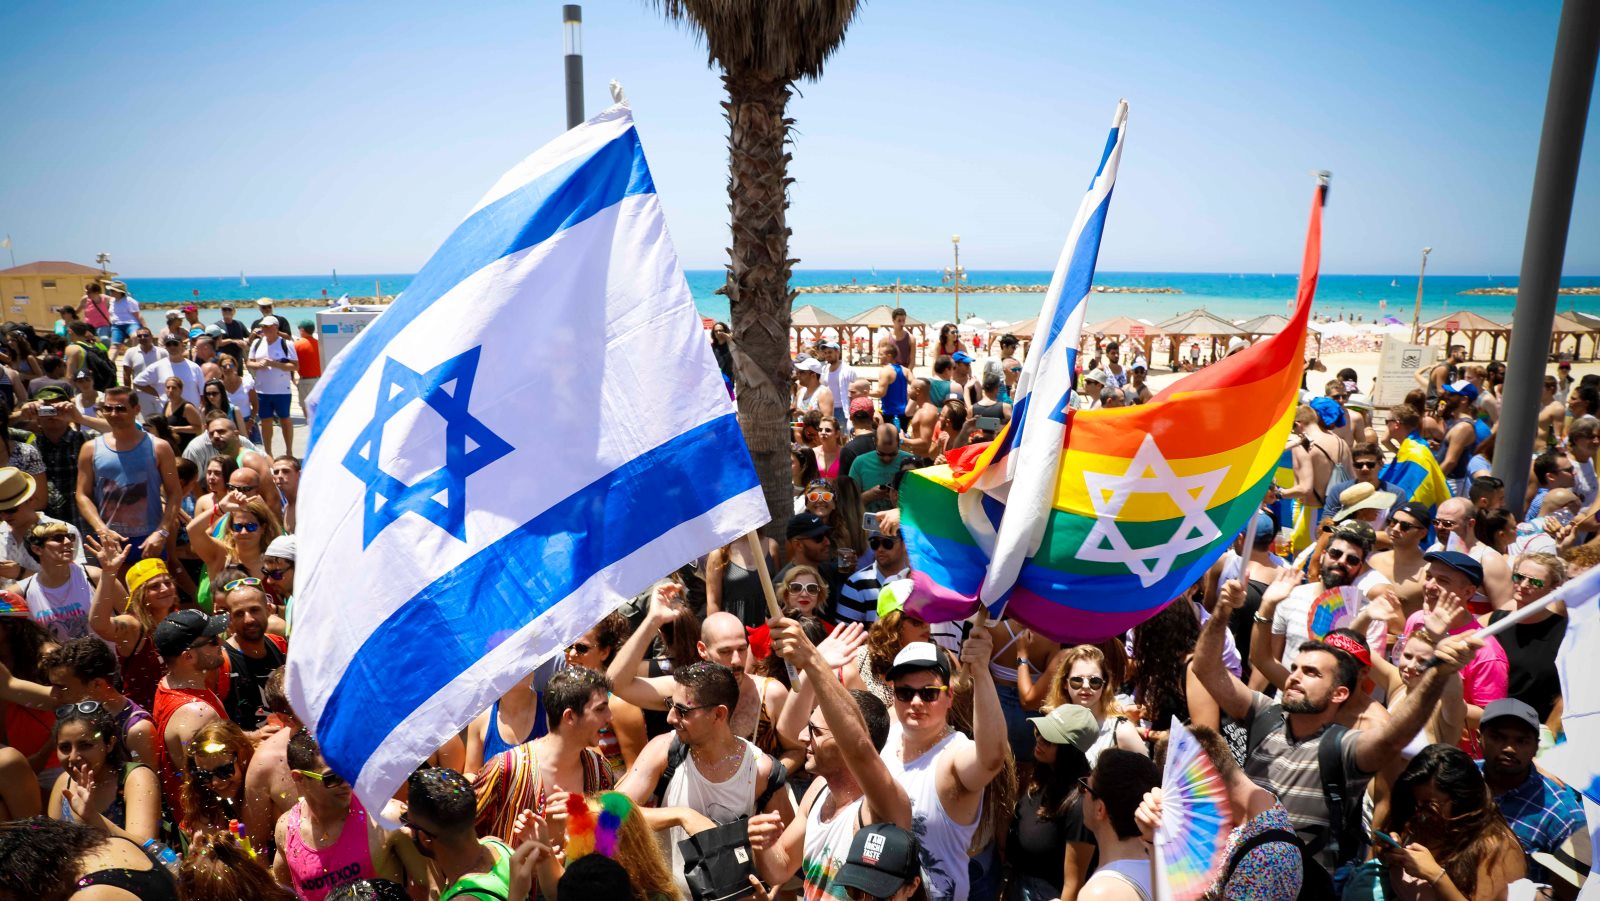 Tel Aviv Pride Week 2019 kicks off - ISRAEL21c